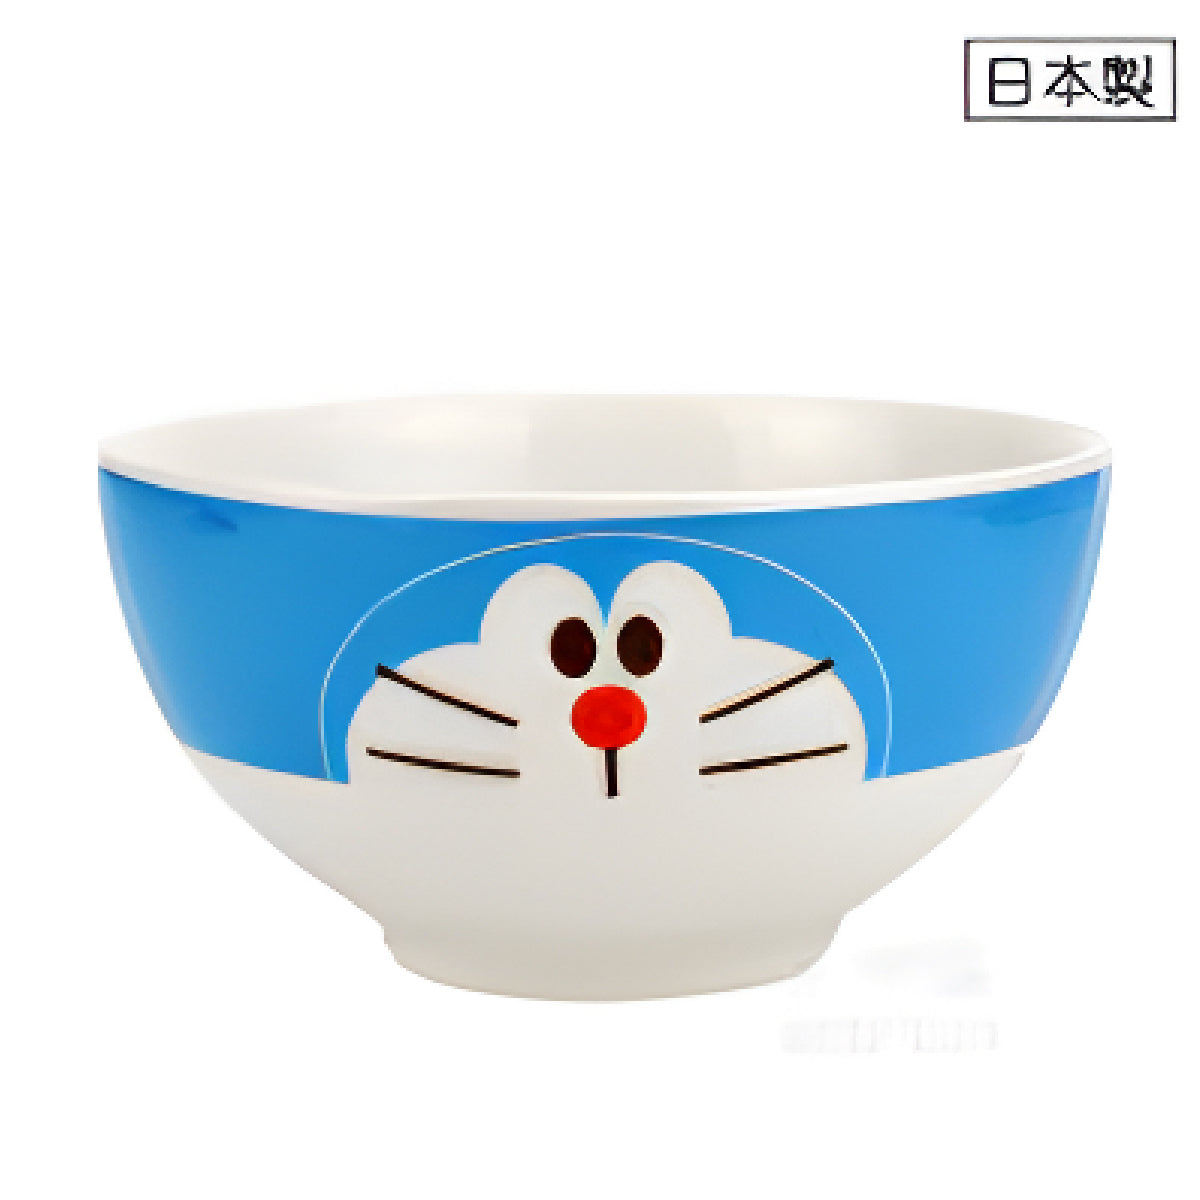 Bowl - Ceramic Doraemon (Japan Edition)